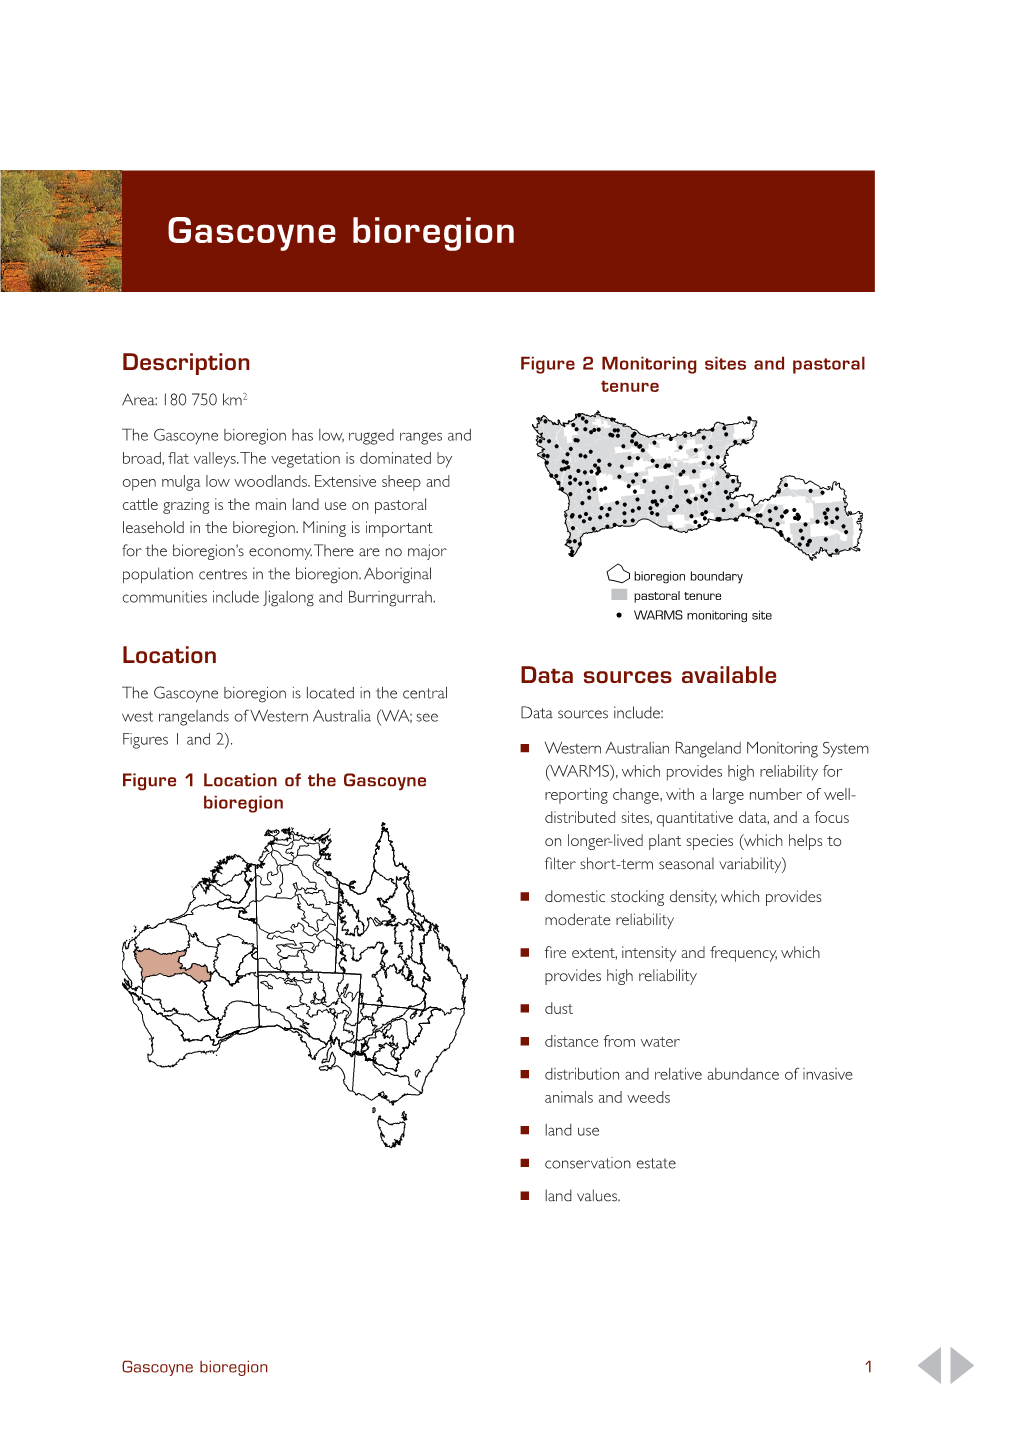 Gascoyne Bioregion